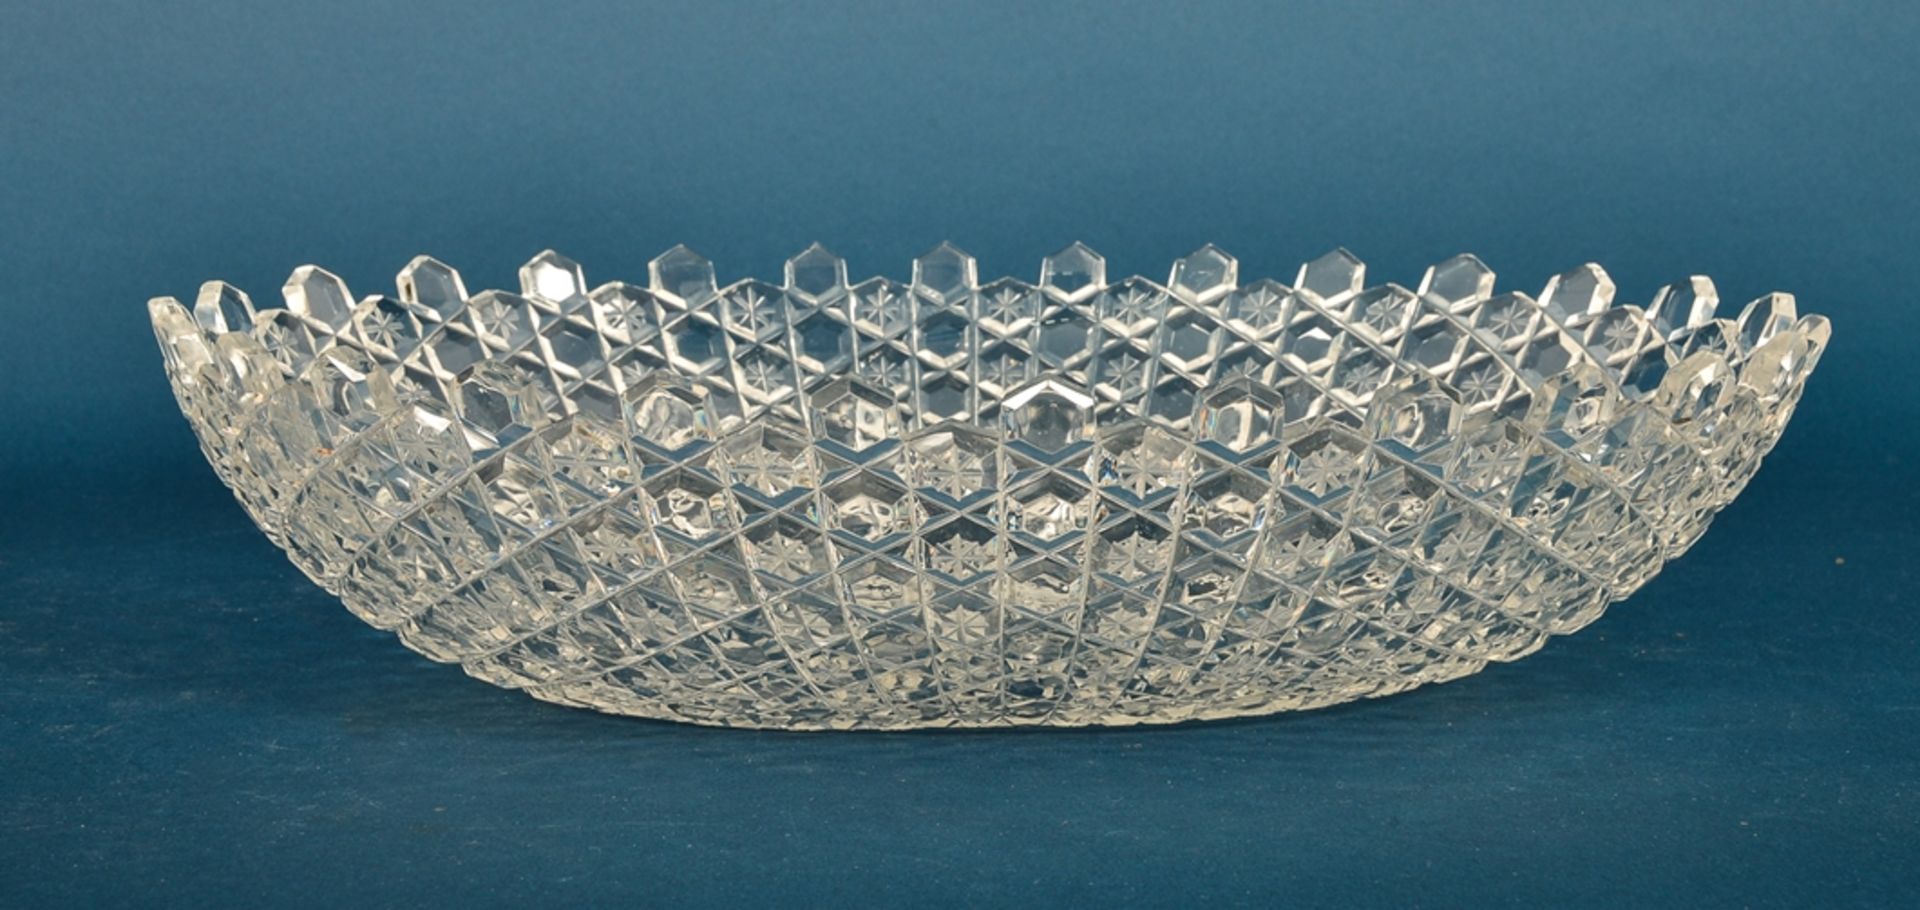 Große, ovale Kristallglas Schüssel, Länge ca. 38 cm, sehr schöner Erhalt, wohl 1930er Jahre. - Image 3 of 4